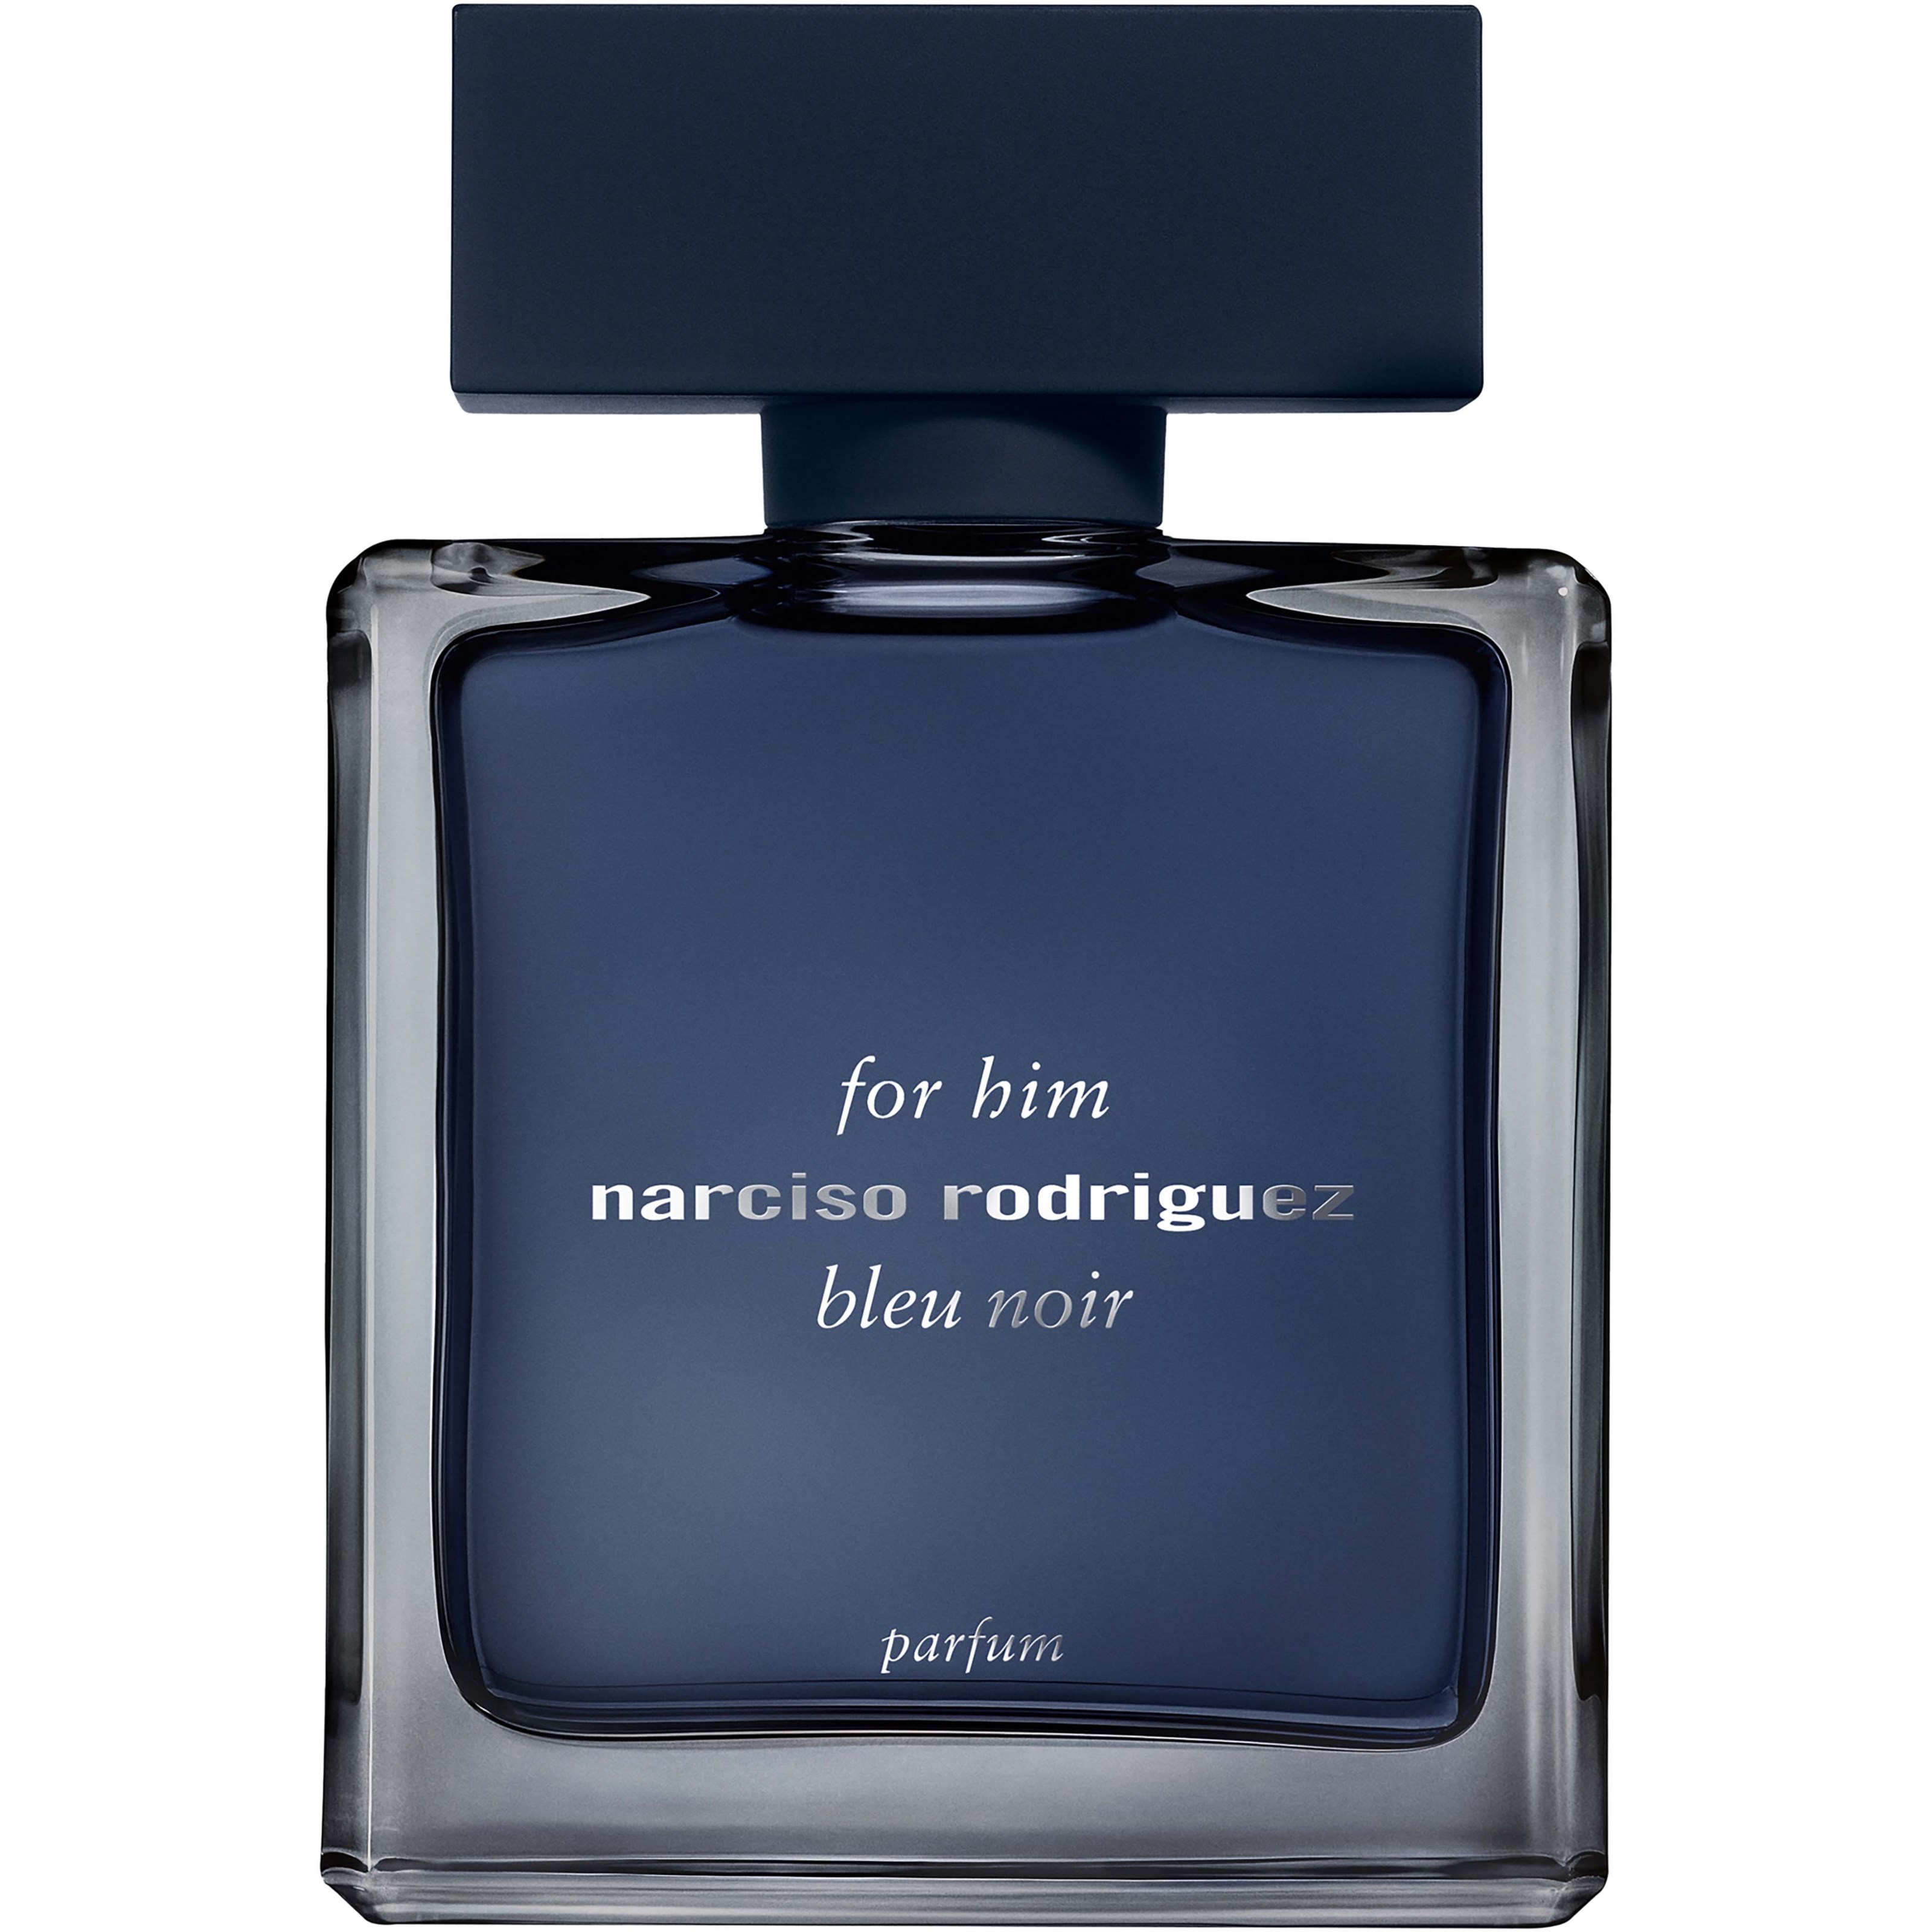 Bilde av Narciso Rodriguez For Him Bleu Noir Parfum 100 Ml